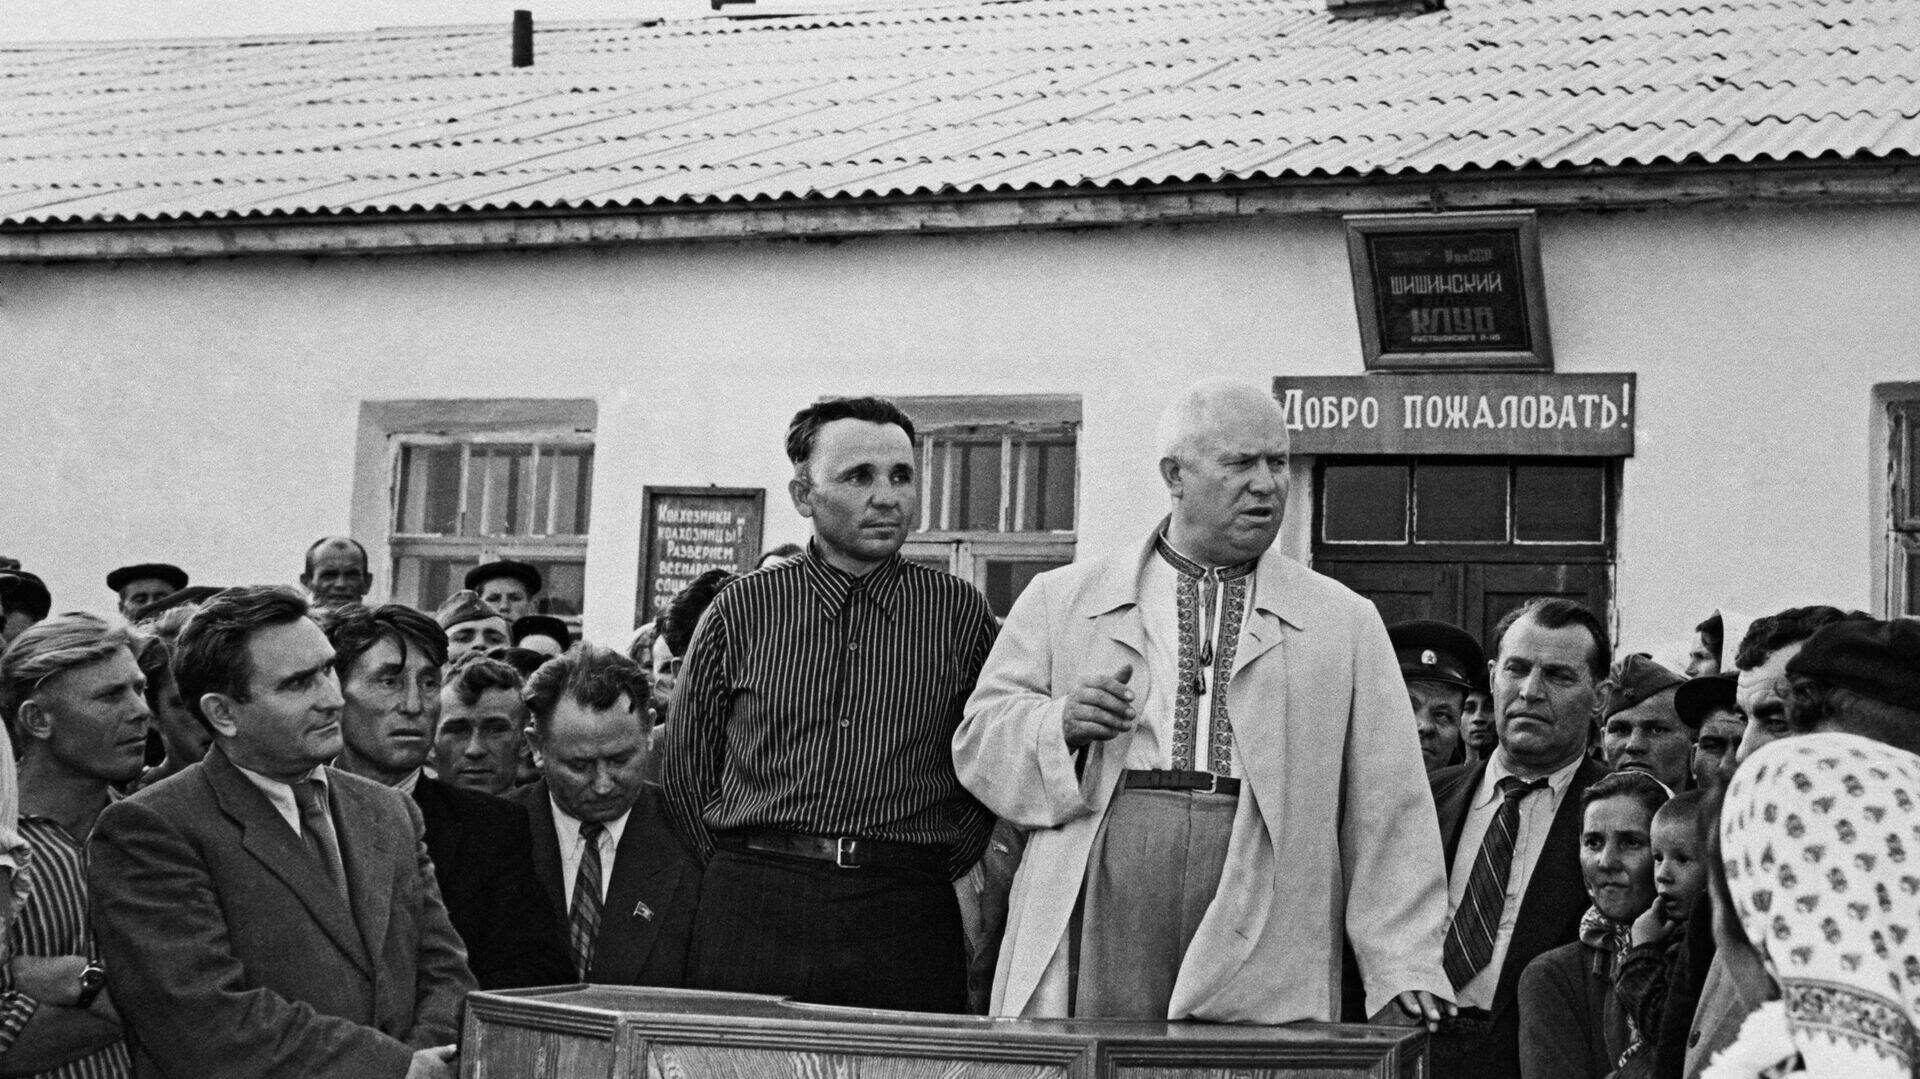 Председатель СМ СССР Н. С. Хрущев (на трибуне справа) выступает перед сельскими колхозниками